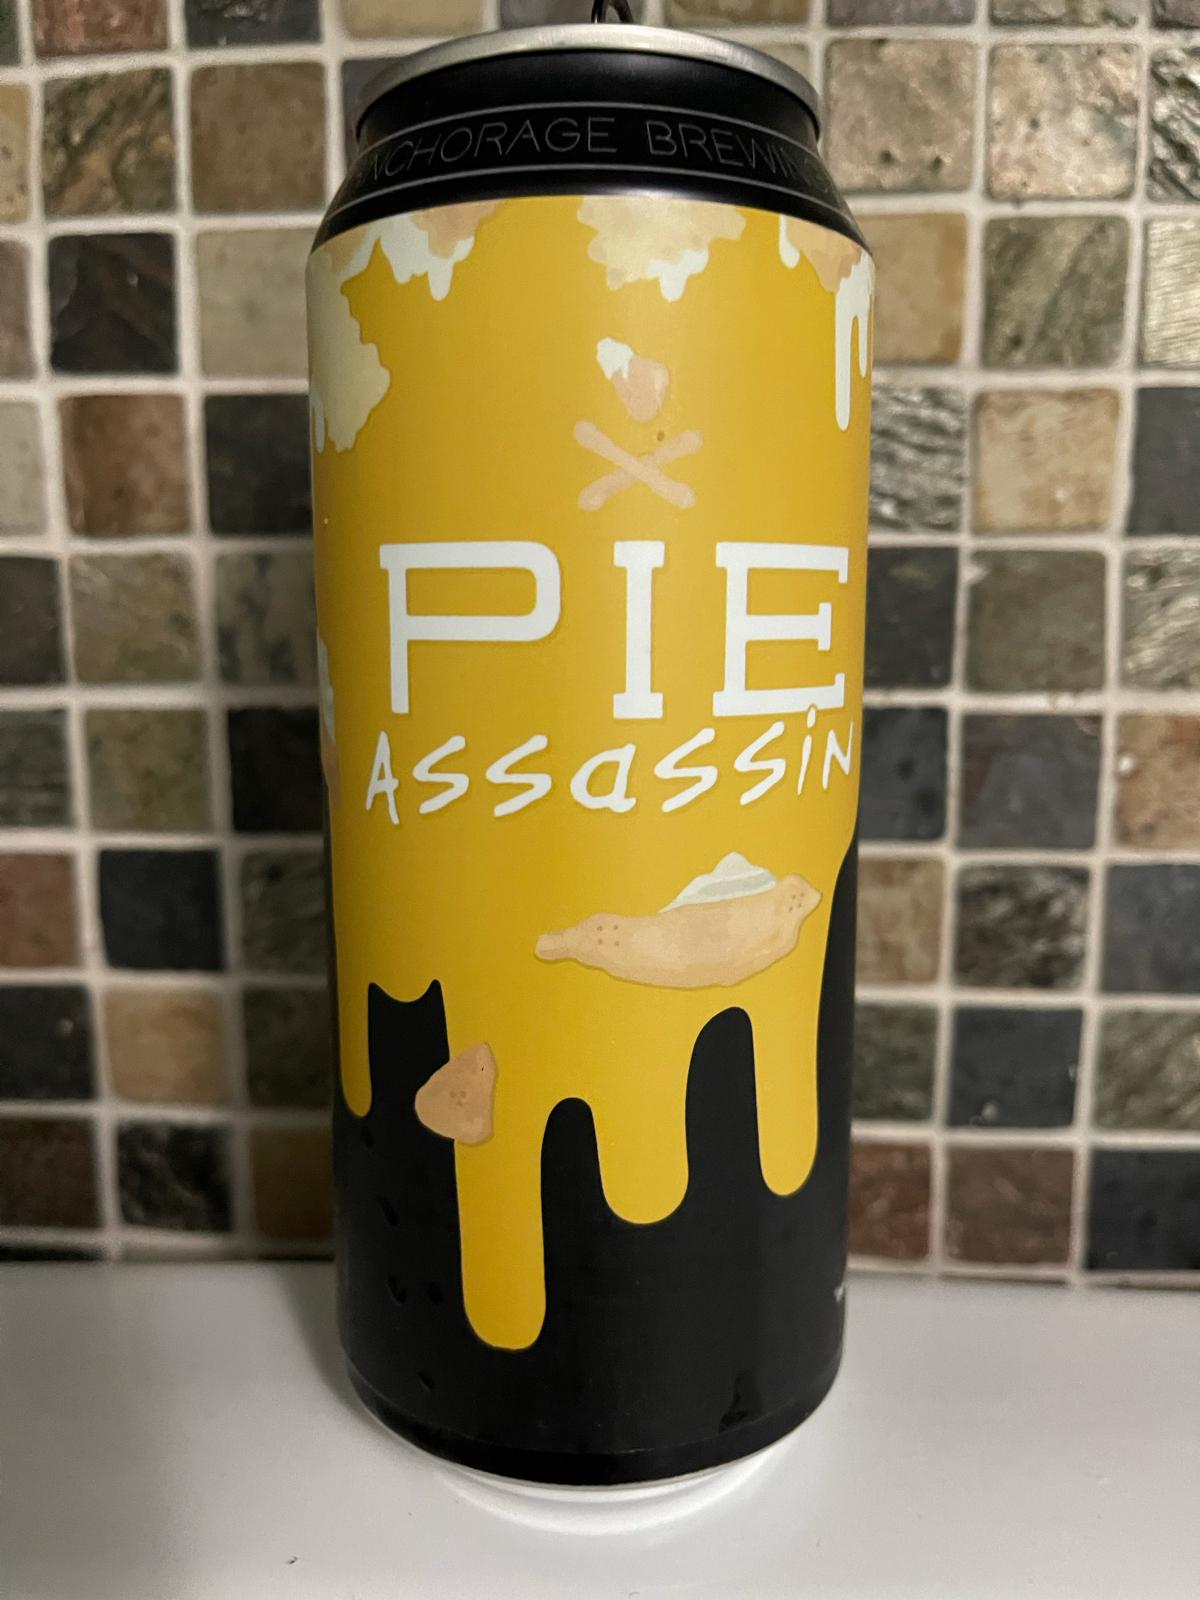 Double Pie Assassin